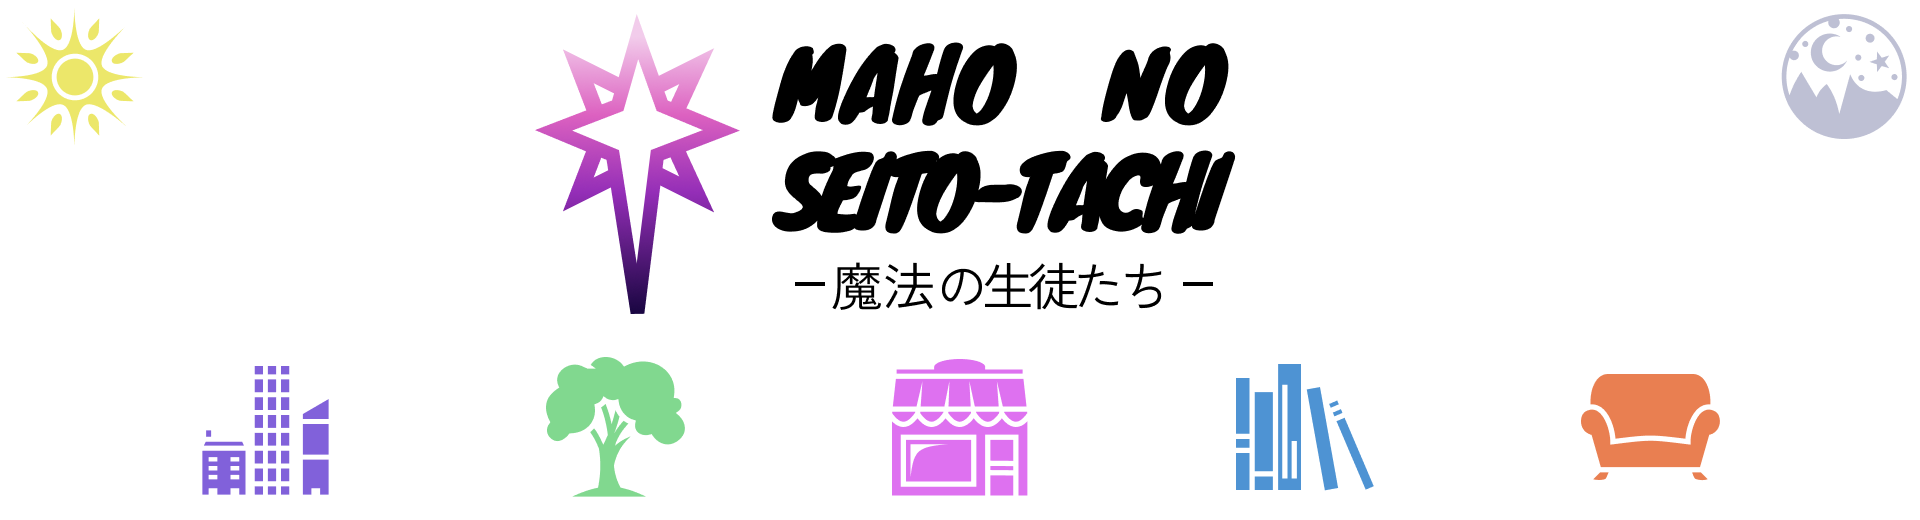 Mahō no Seito-Tachi